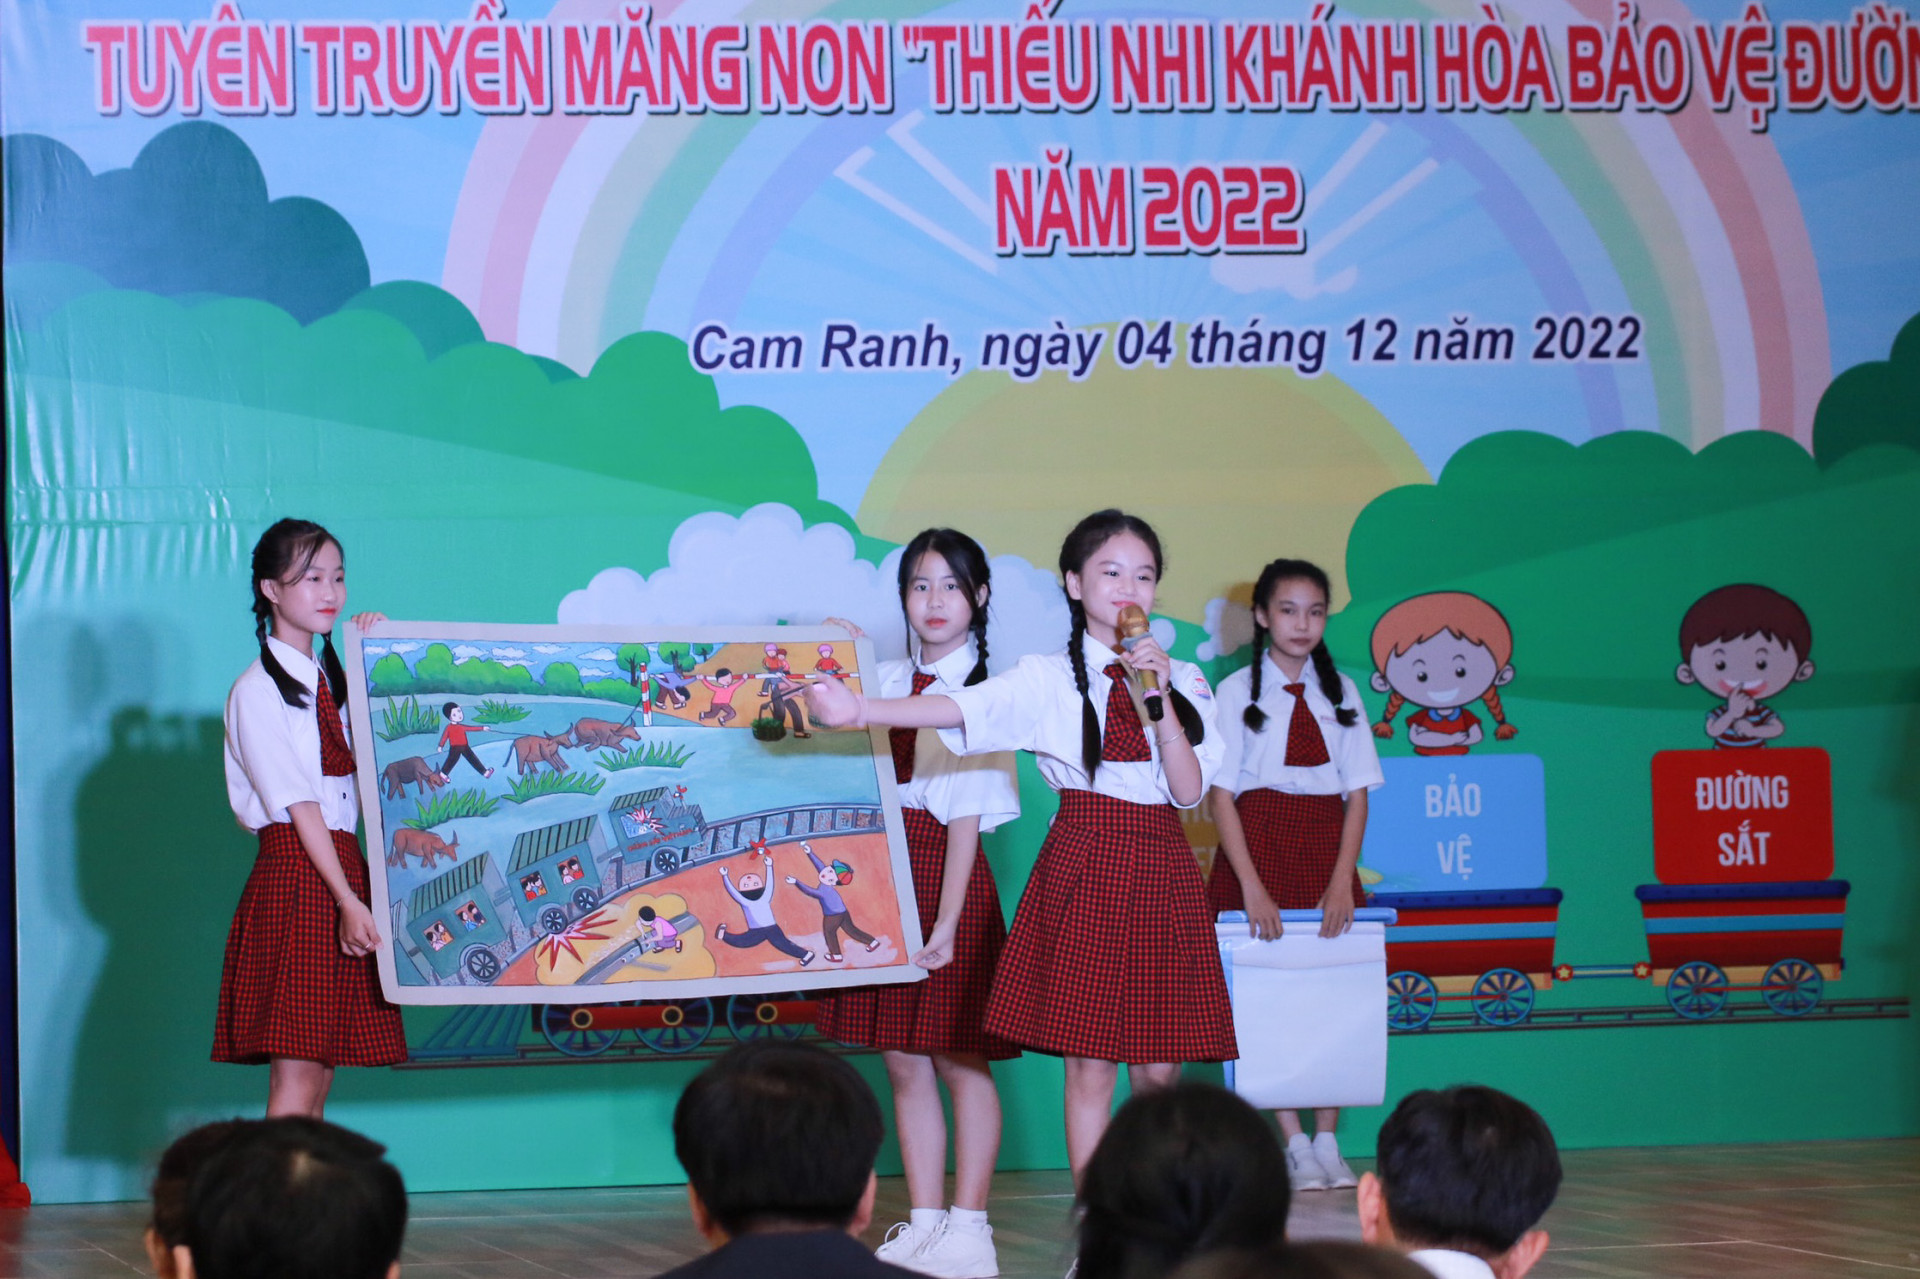 Tỉnh đoàn - Hội đồng Đội tỉnh phối hợp cùng Tổng Công ty Đường sắt Việt Nam tổ chức hội thi tuyên truyền măng non thiếu nhi Khánh Hoà bảo vệ đường sắt